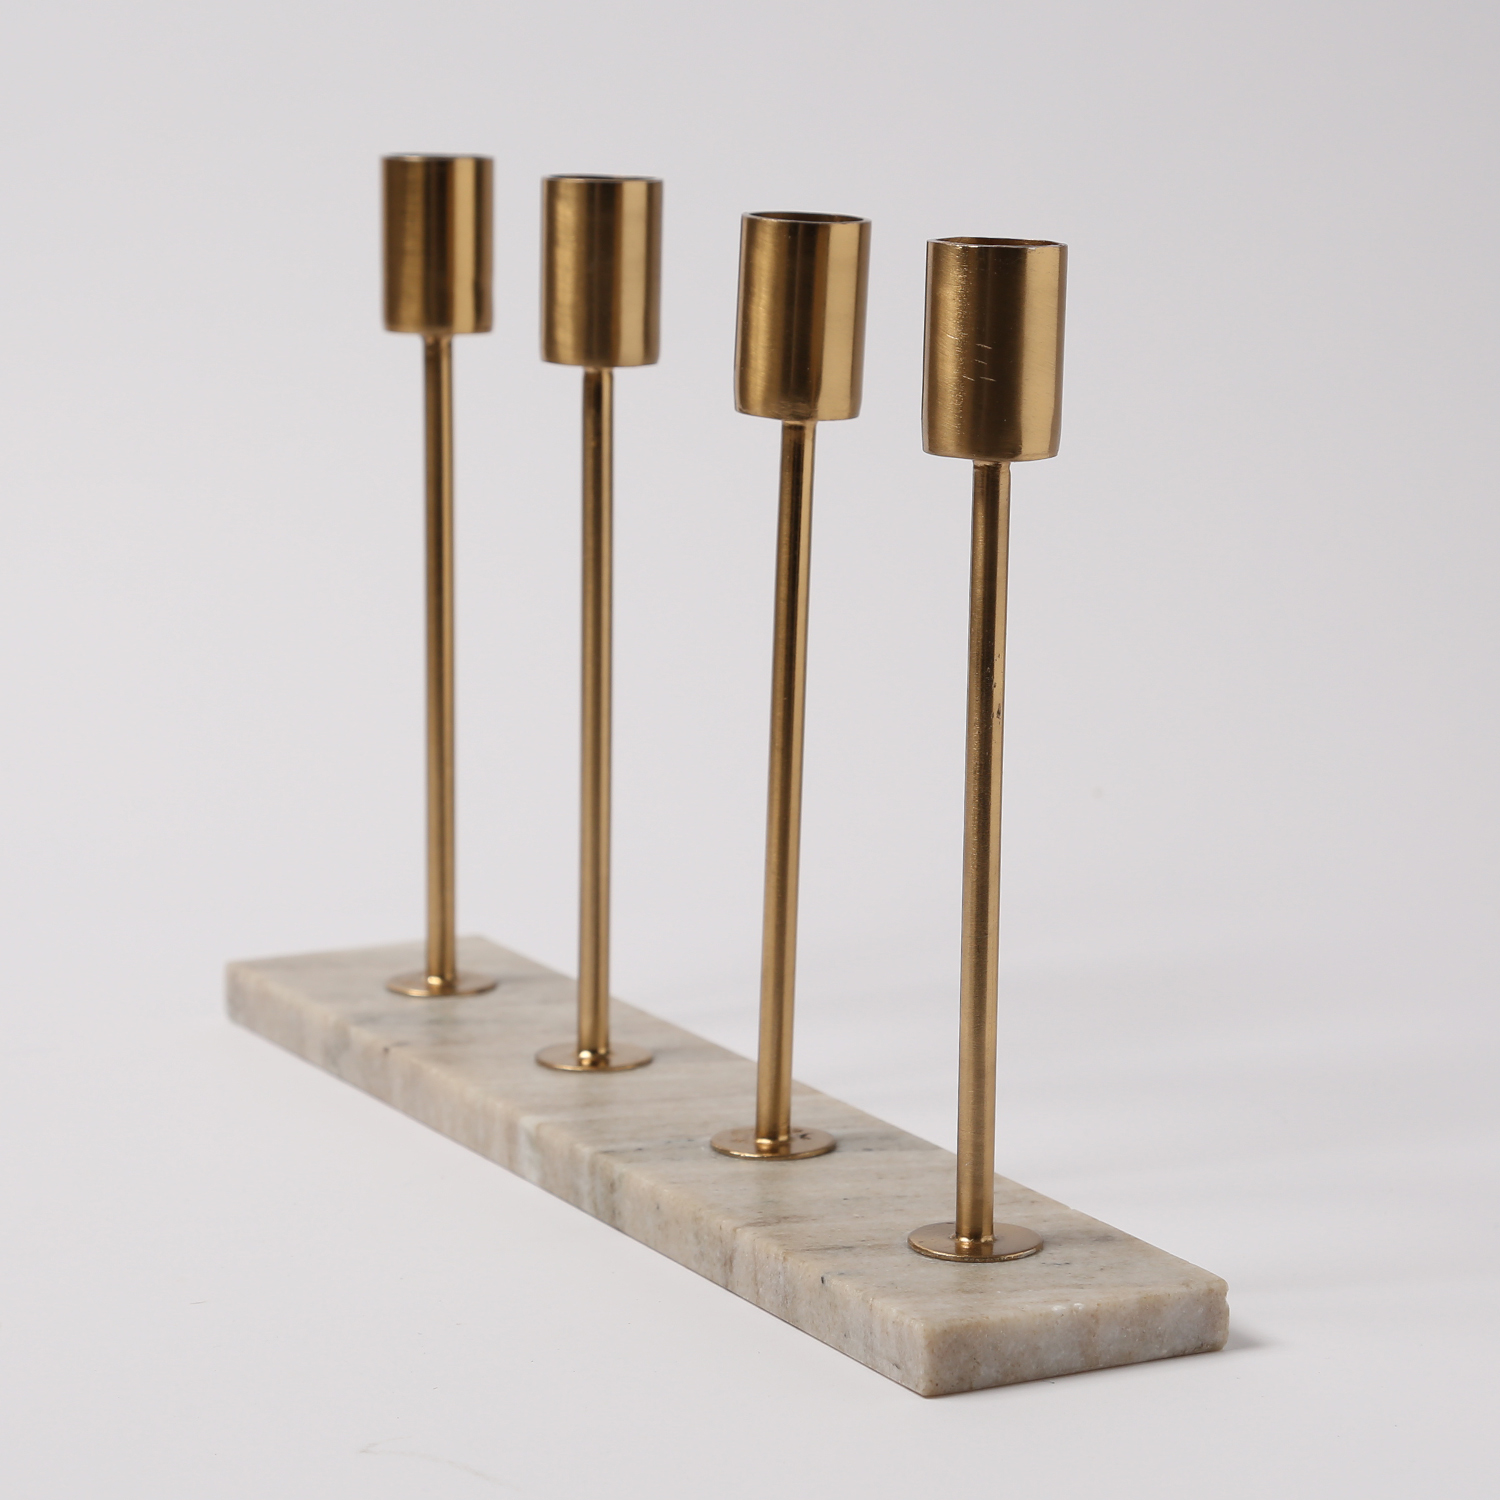 Stabkerzenhalter - Mamoroptik - Metall - 4 goldfarbene Kerzenhalterungen - H: 20cm - beige